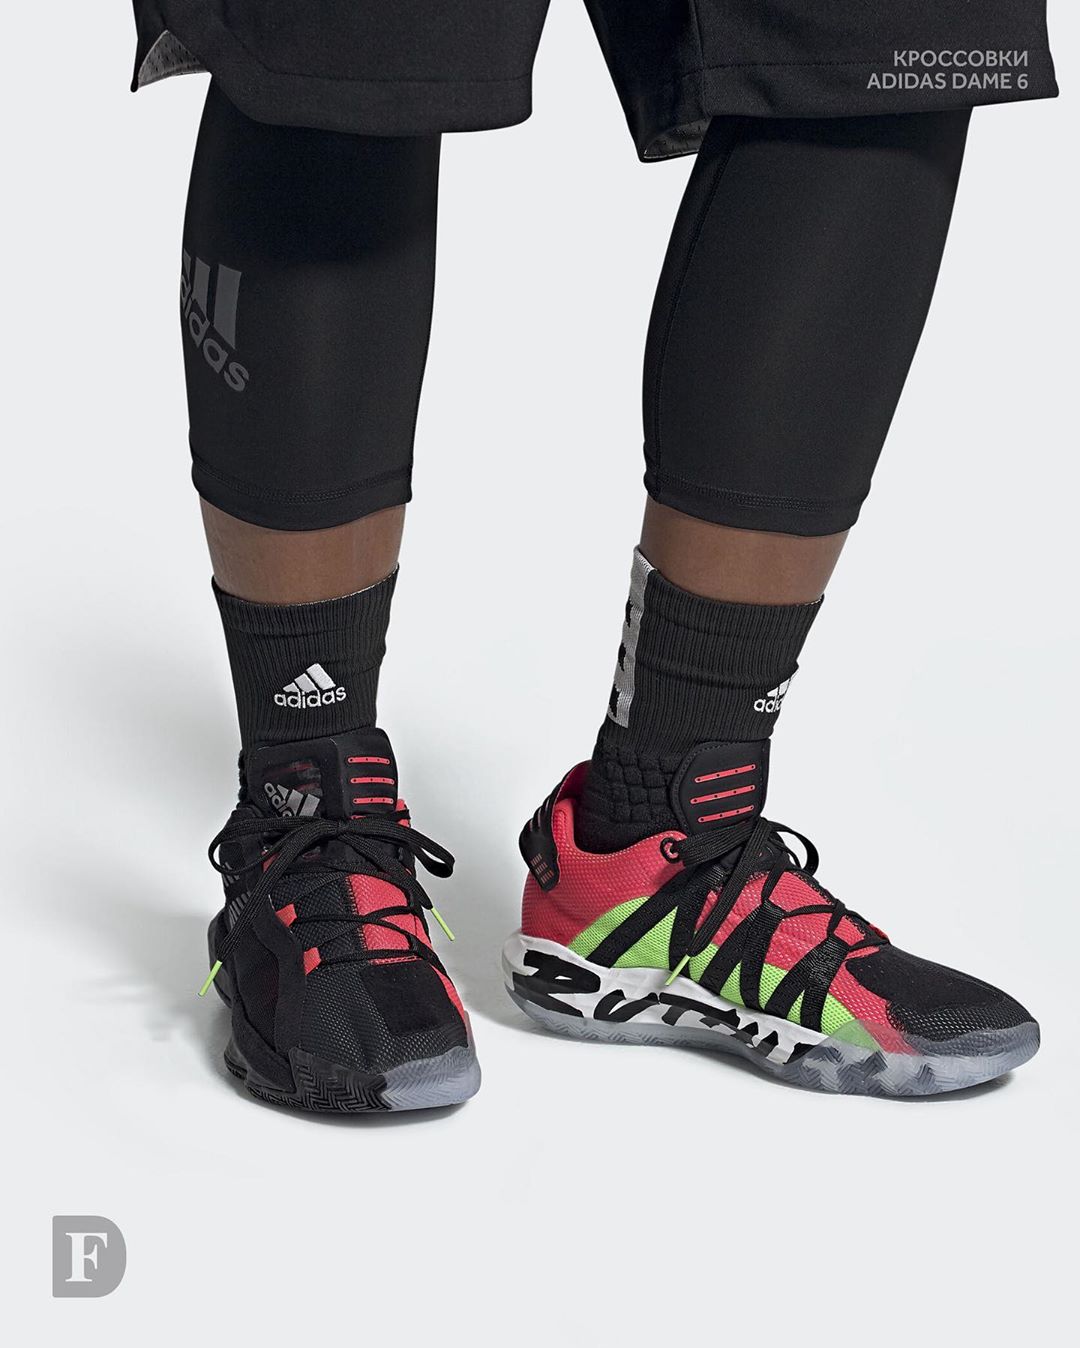 𝐅𝐔𝐍𝐊𝐘 𝐃𝐔𝐍𝐊𝐘 - Adidas Dame 6 / 8490₽
⠀
Мужские баскетбольные кроссовки. 6-я именная модель звезды НБА Дэмиана Лилларда. Многослойный текстильный прочный верх, технологичная лёгкая пена Lightstrike...